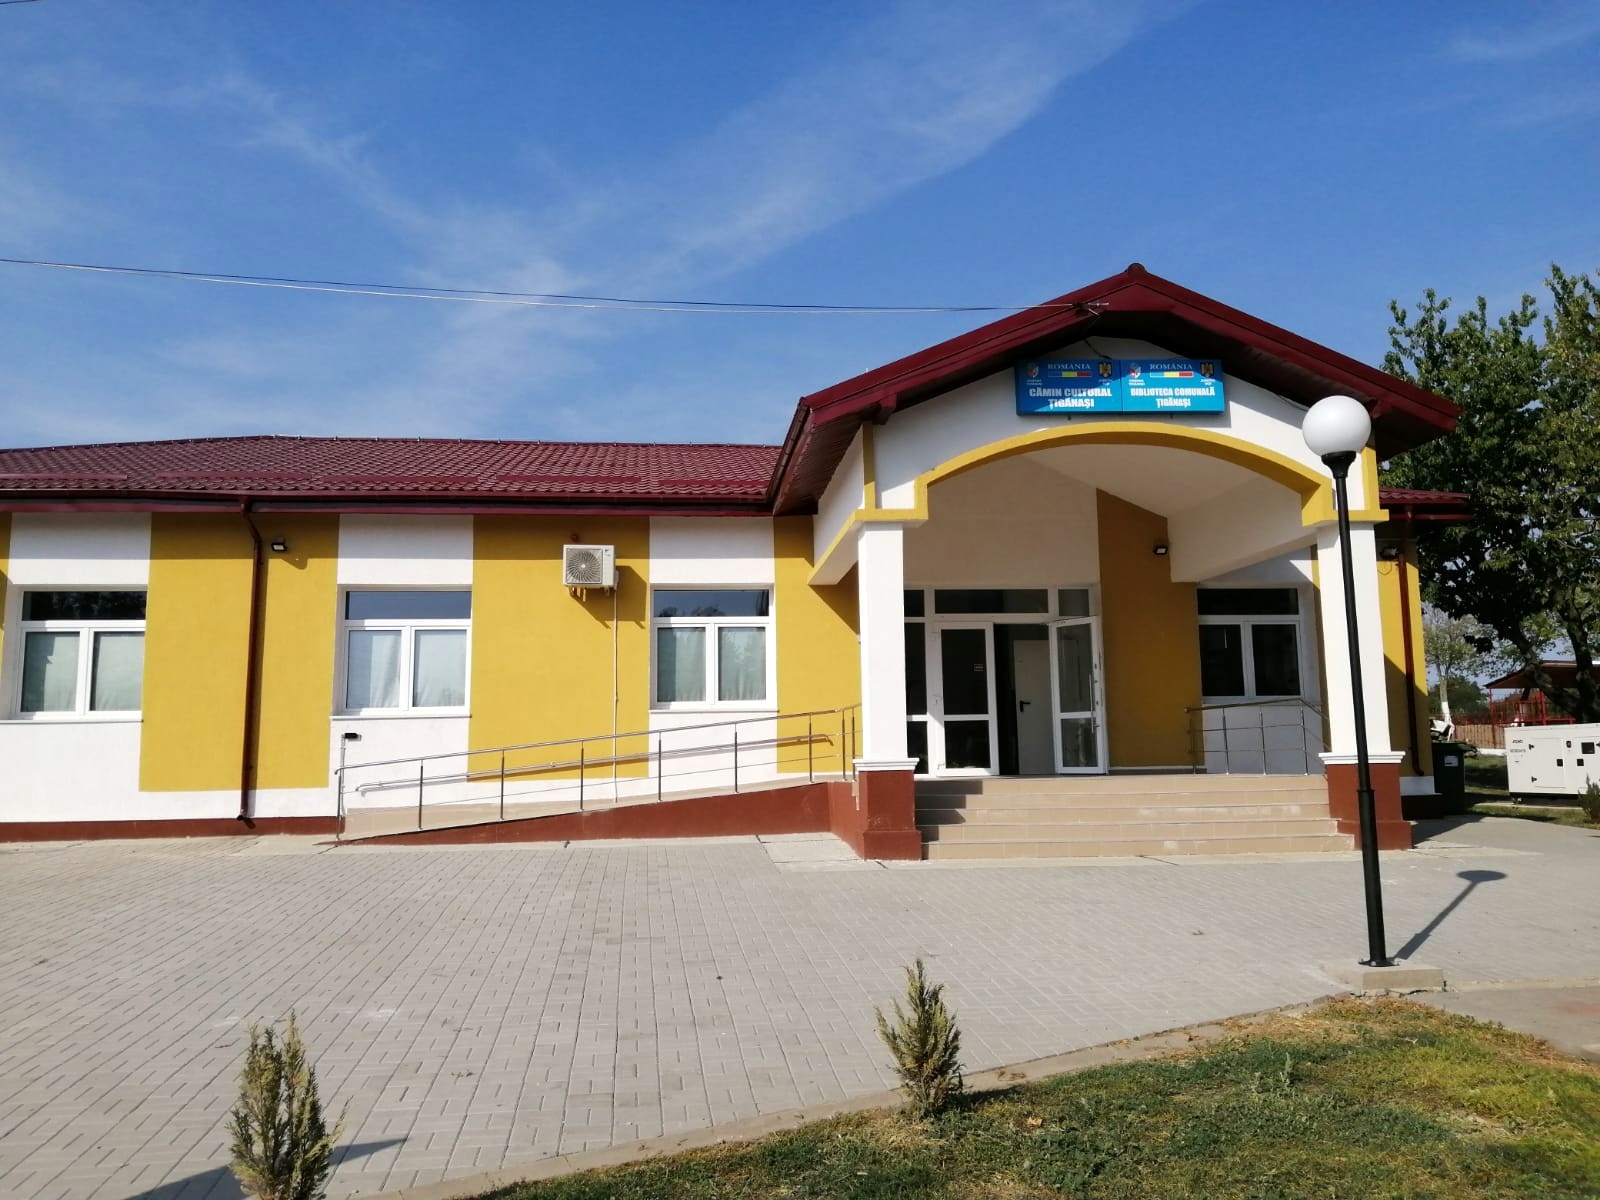 Recepția a două investiții importante în comuna Țigănași, județul Iași – Cămin Cultural și Cabinete Medicale